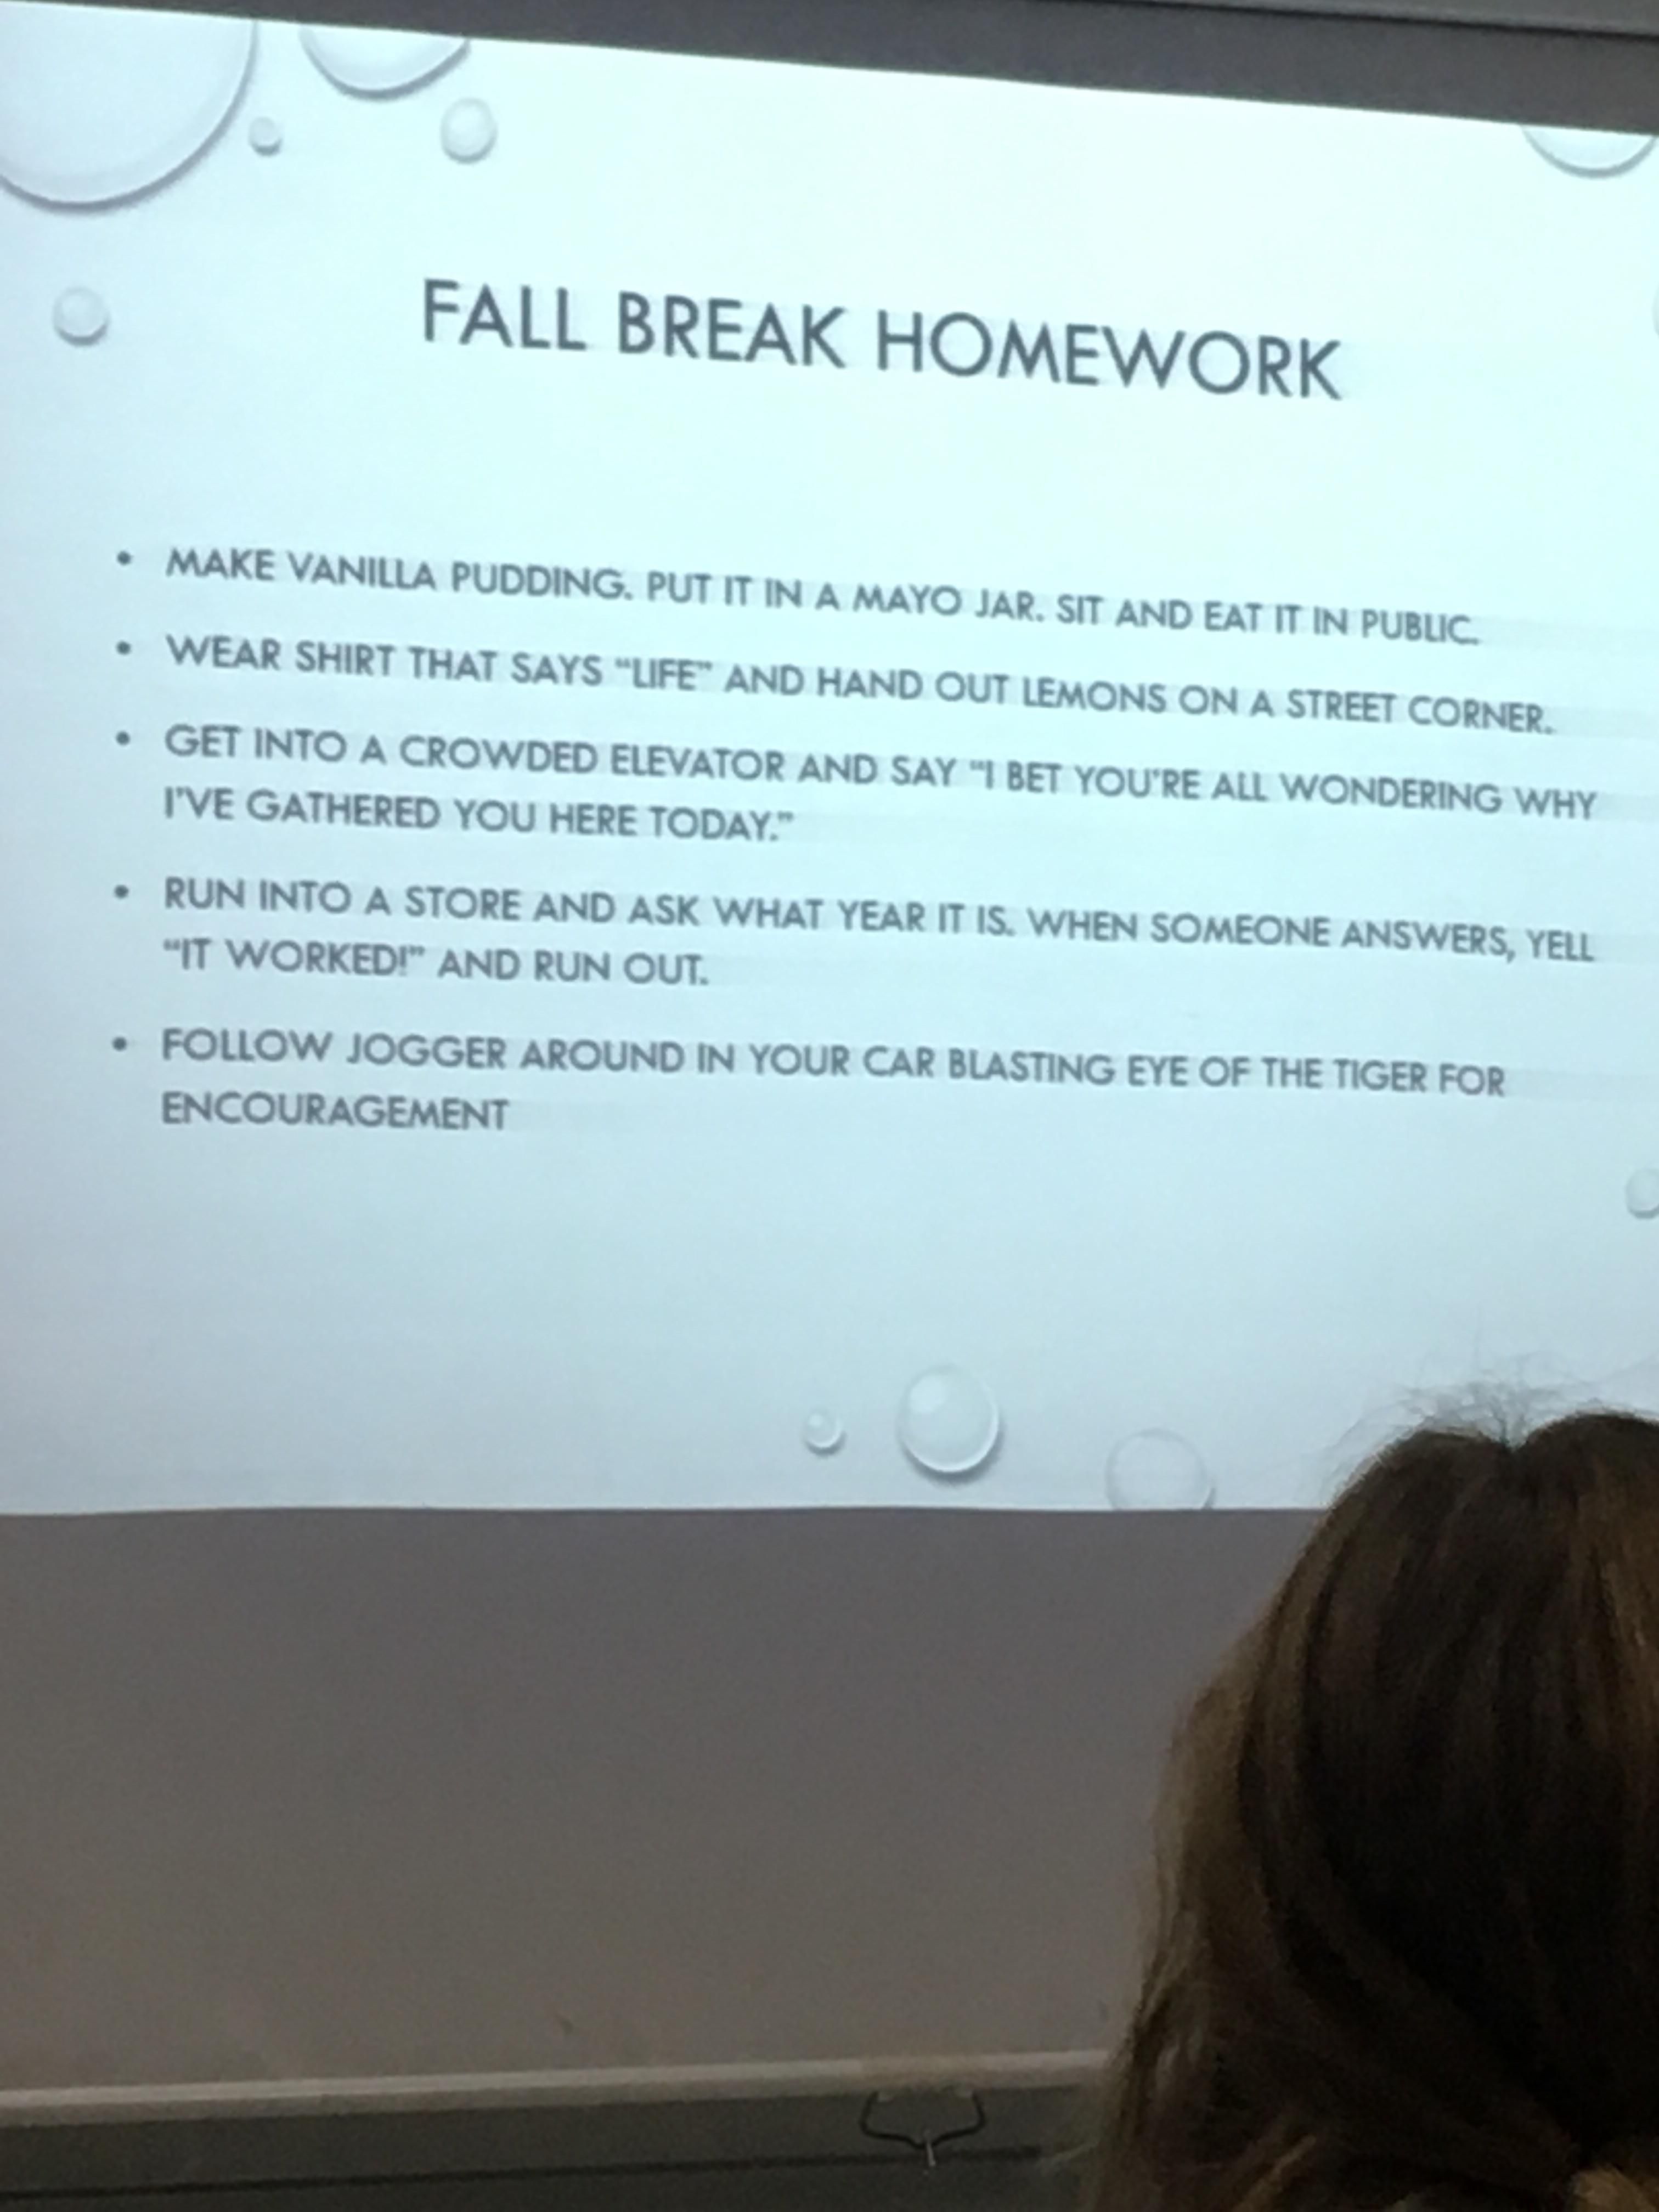 My teacher’s Fall Break Homework